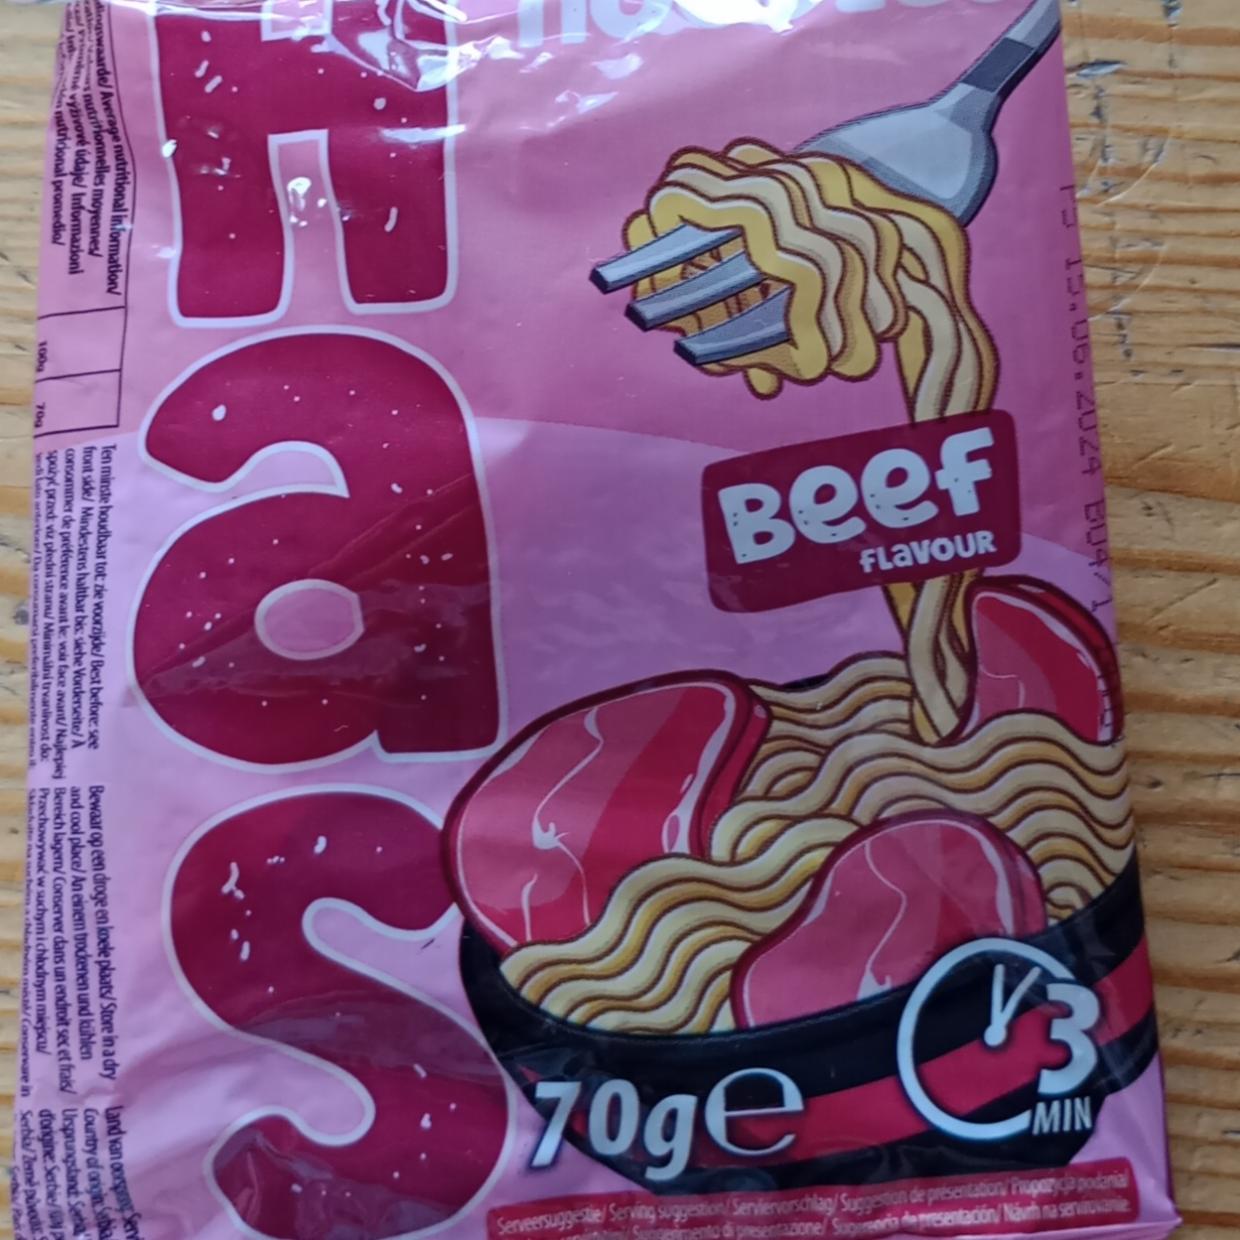 Fotografie - Beef flavour Instant noodles halal Has